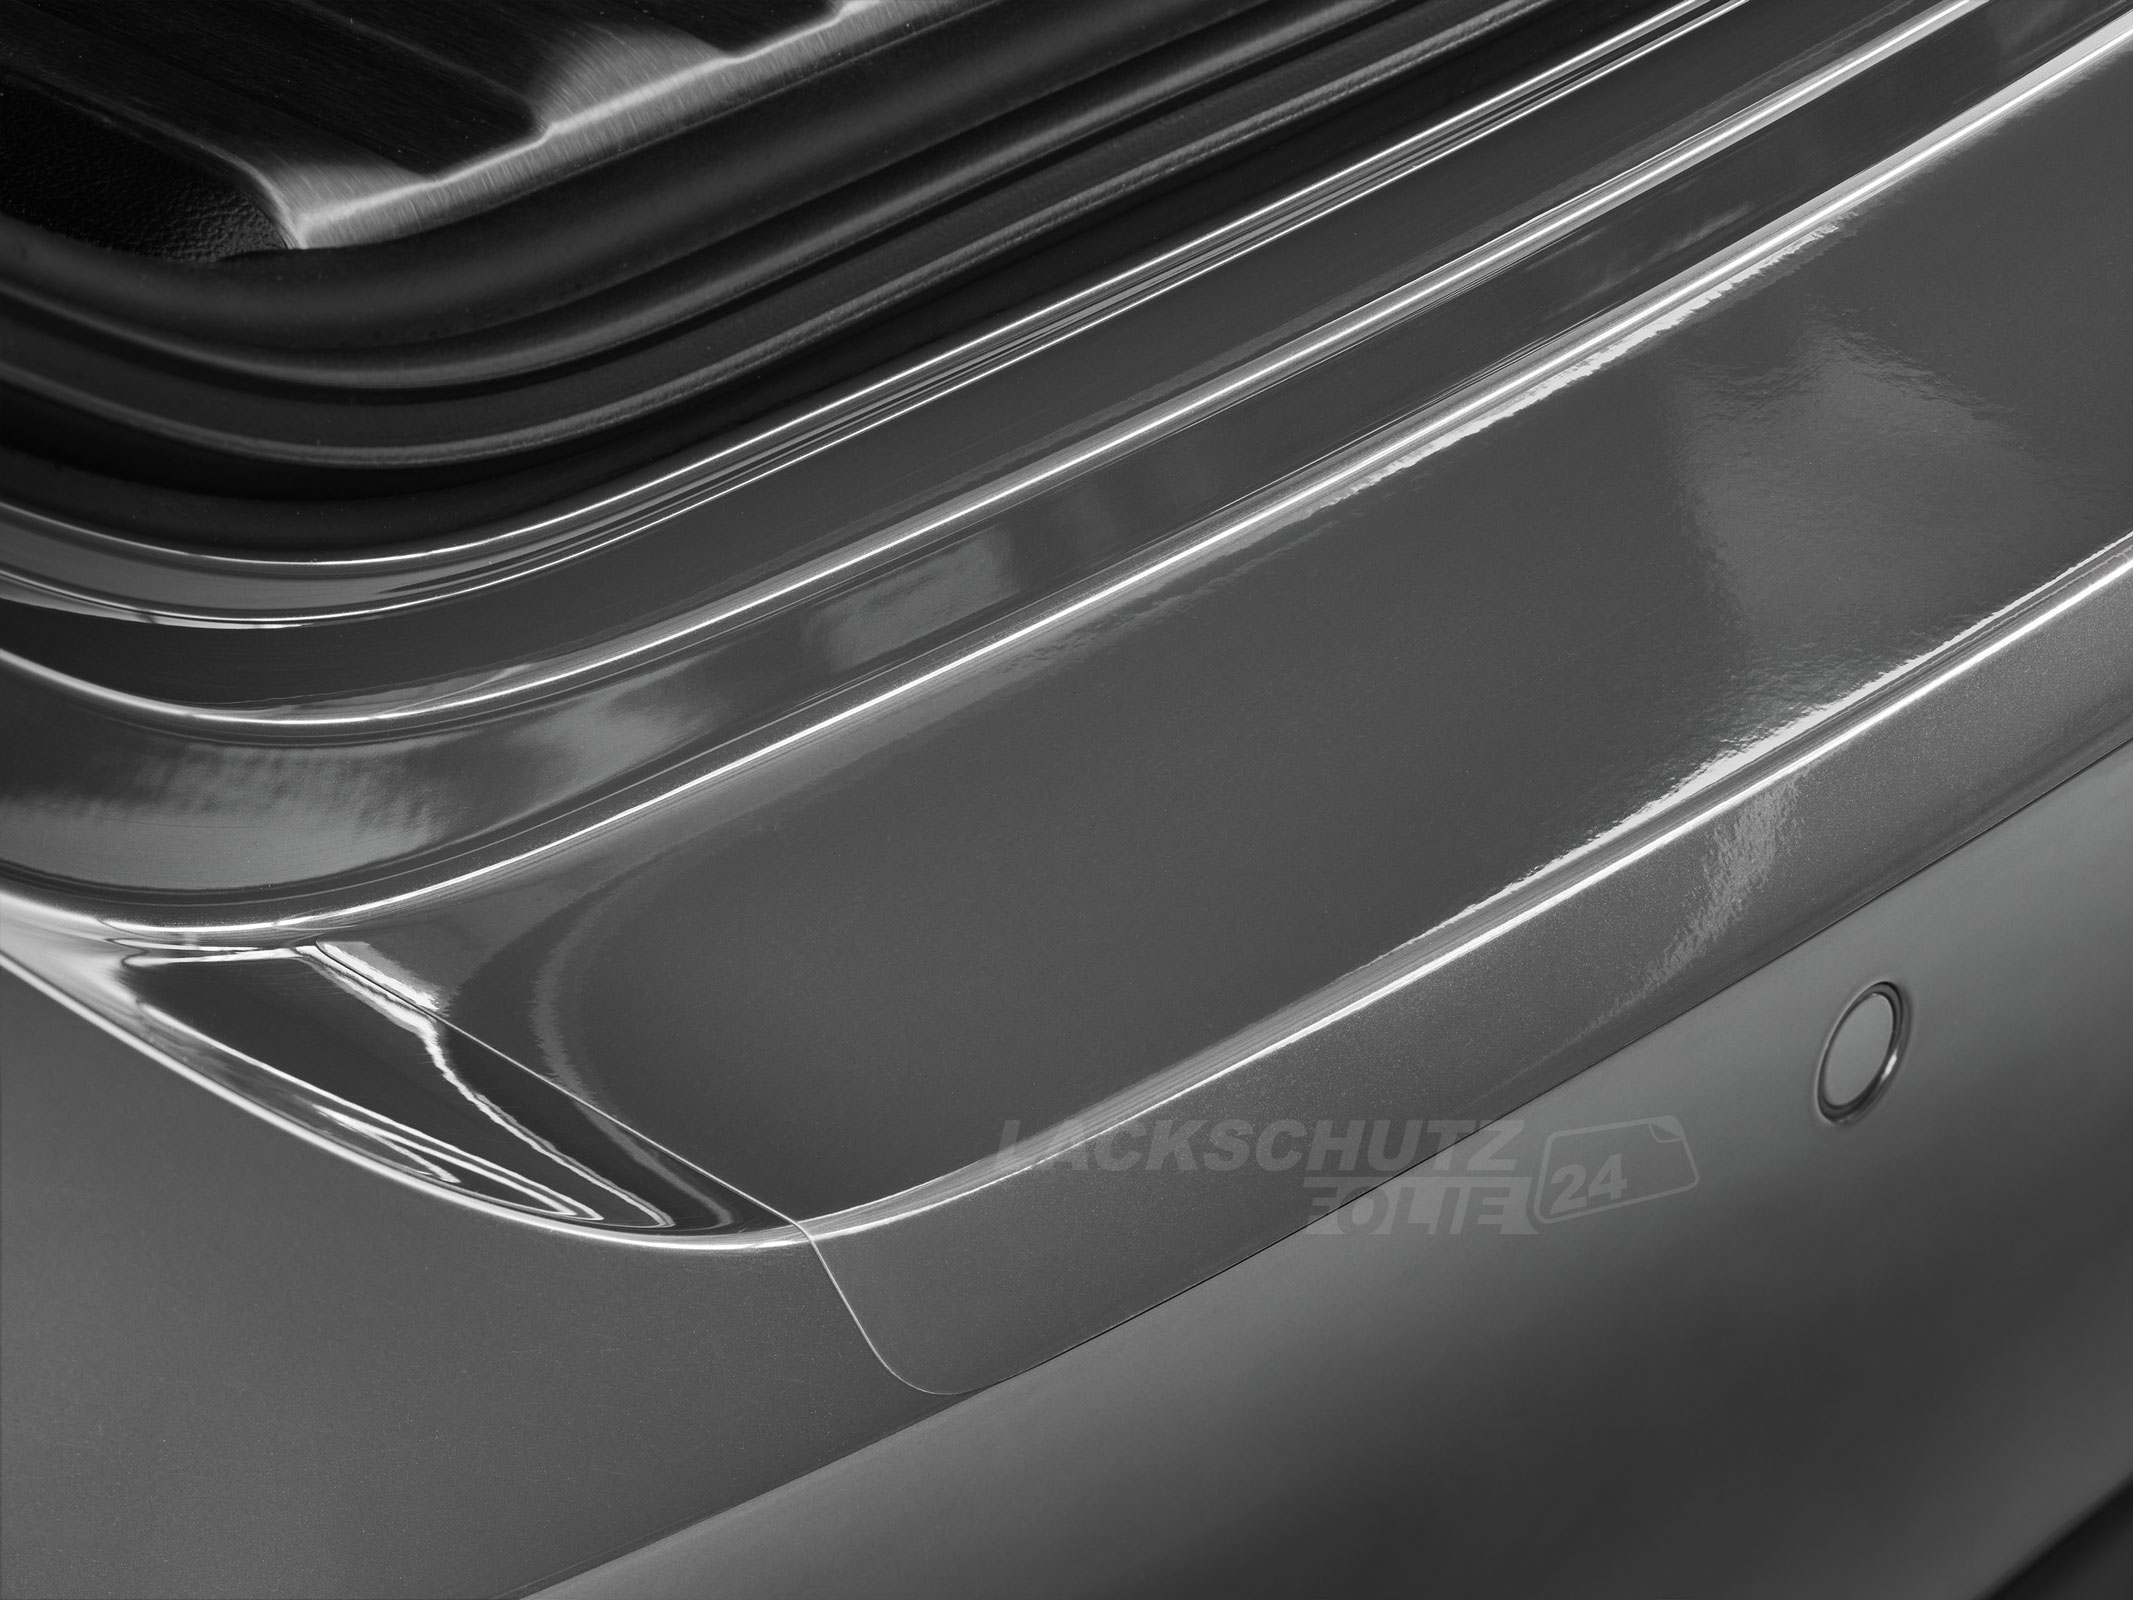 Ladekantenschutzfolie - Transparent Glatt Hochglänzend 150 µm stark für Ford B-Max ab BJ 09/2012